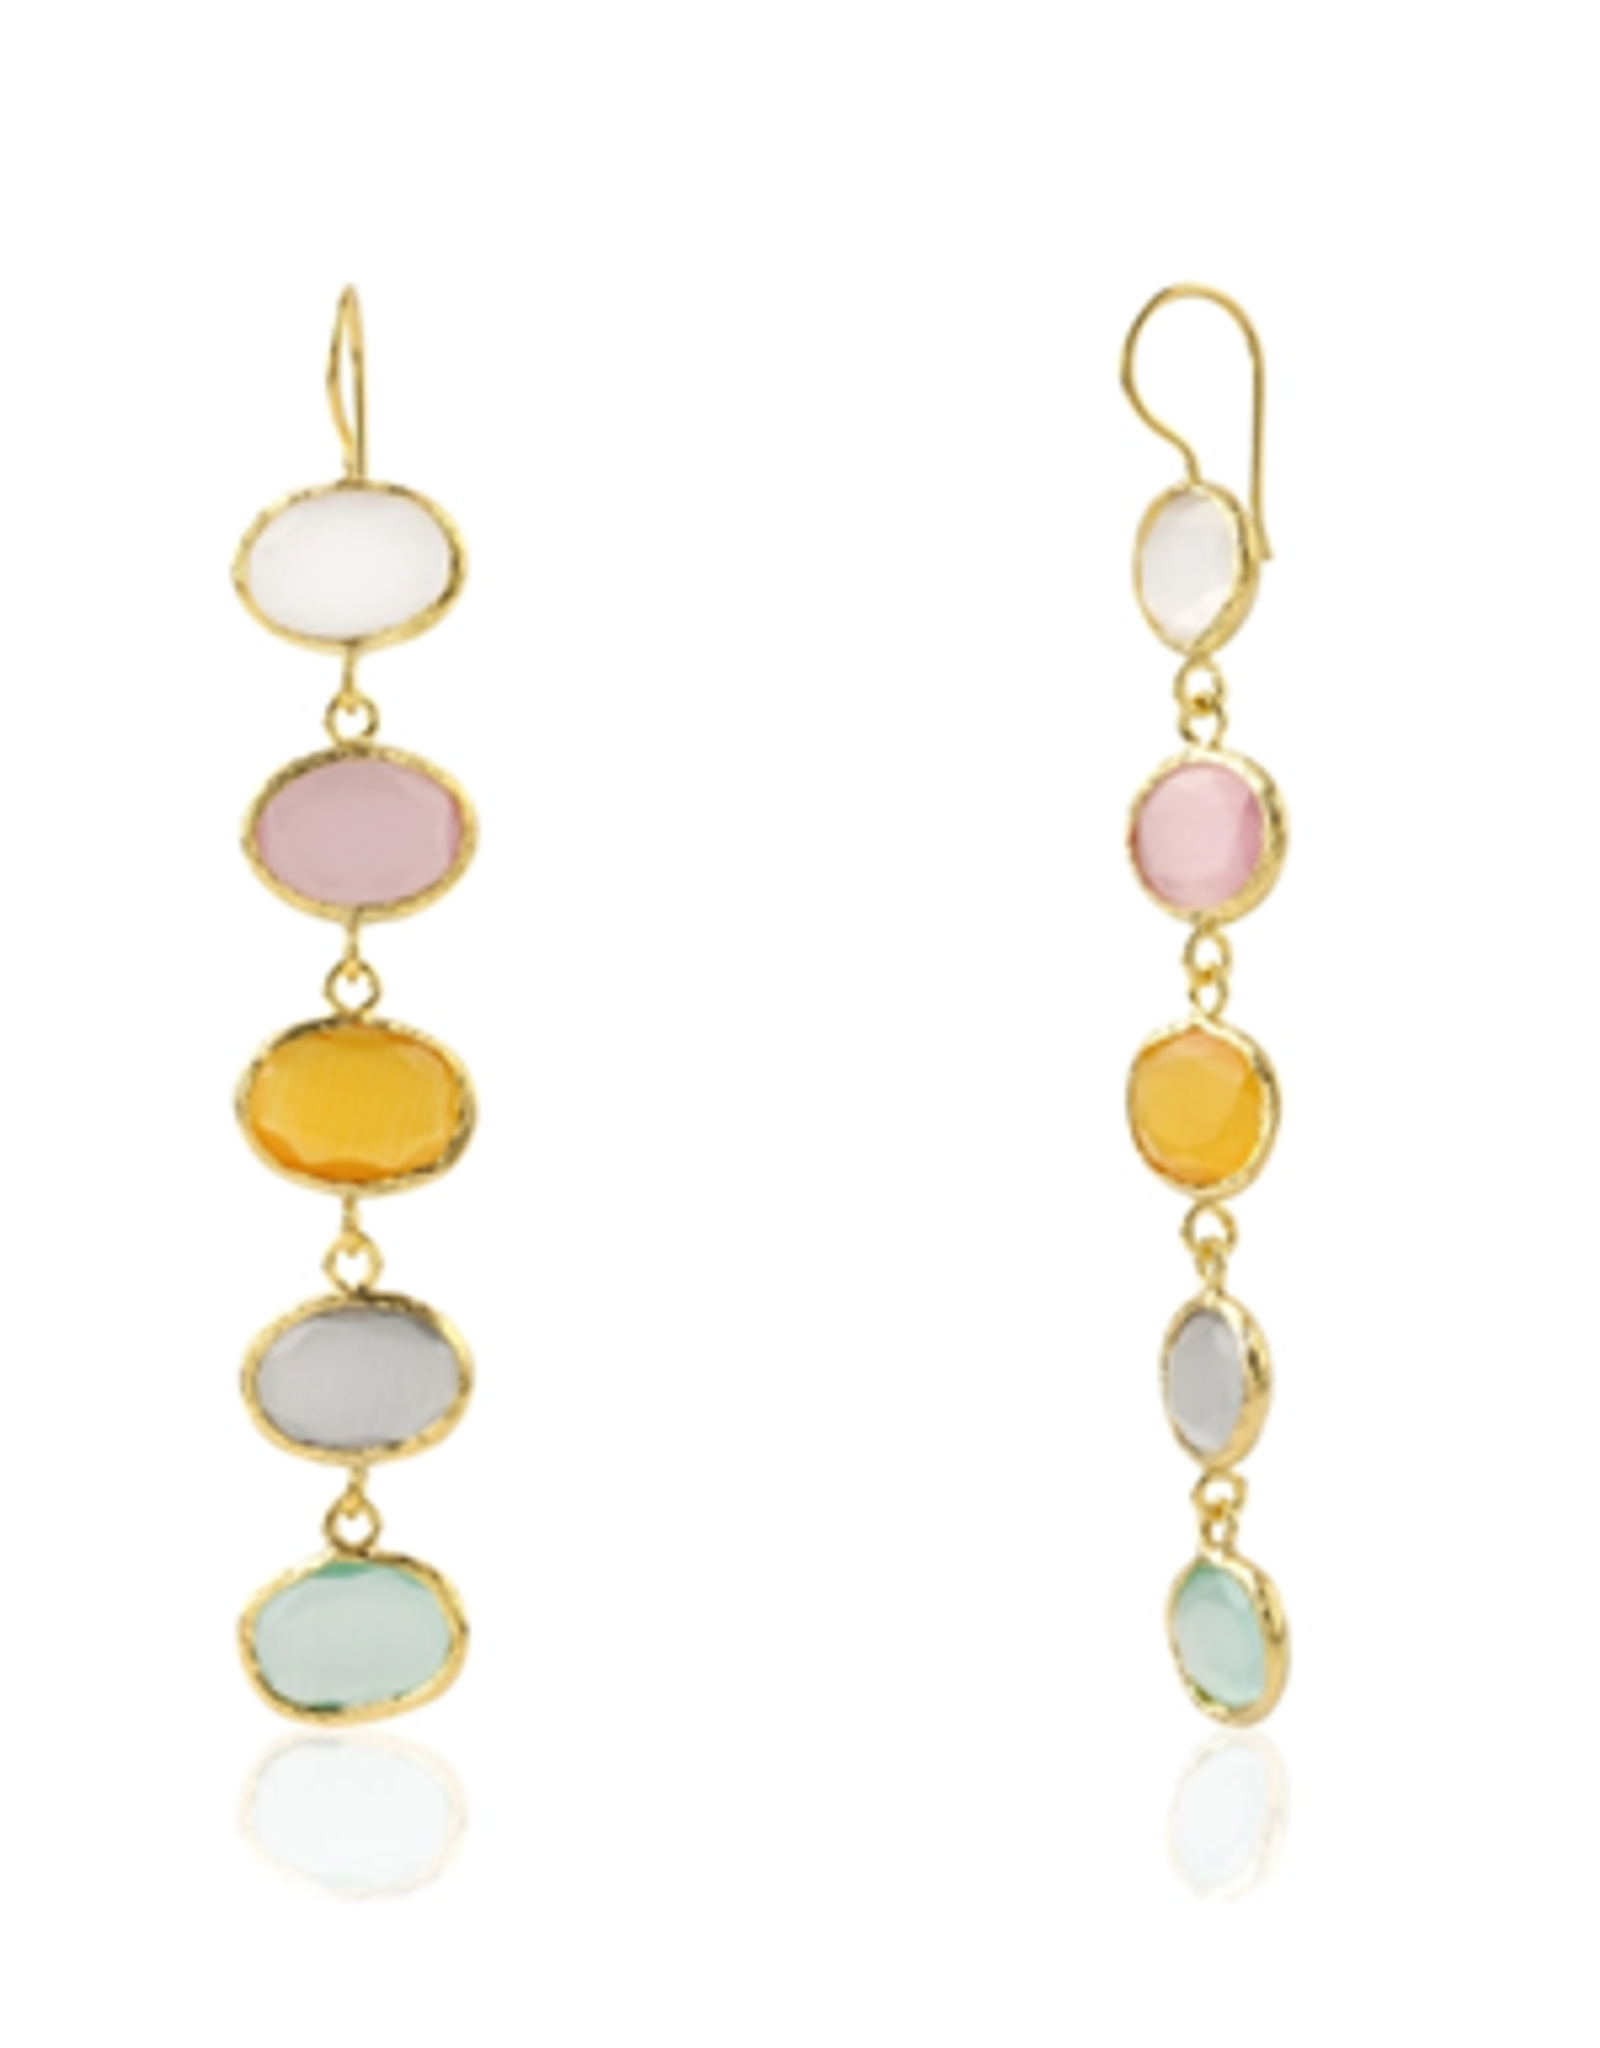 Chakarr Jewelry 5-Drop Pastel Earrings